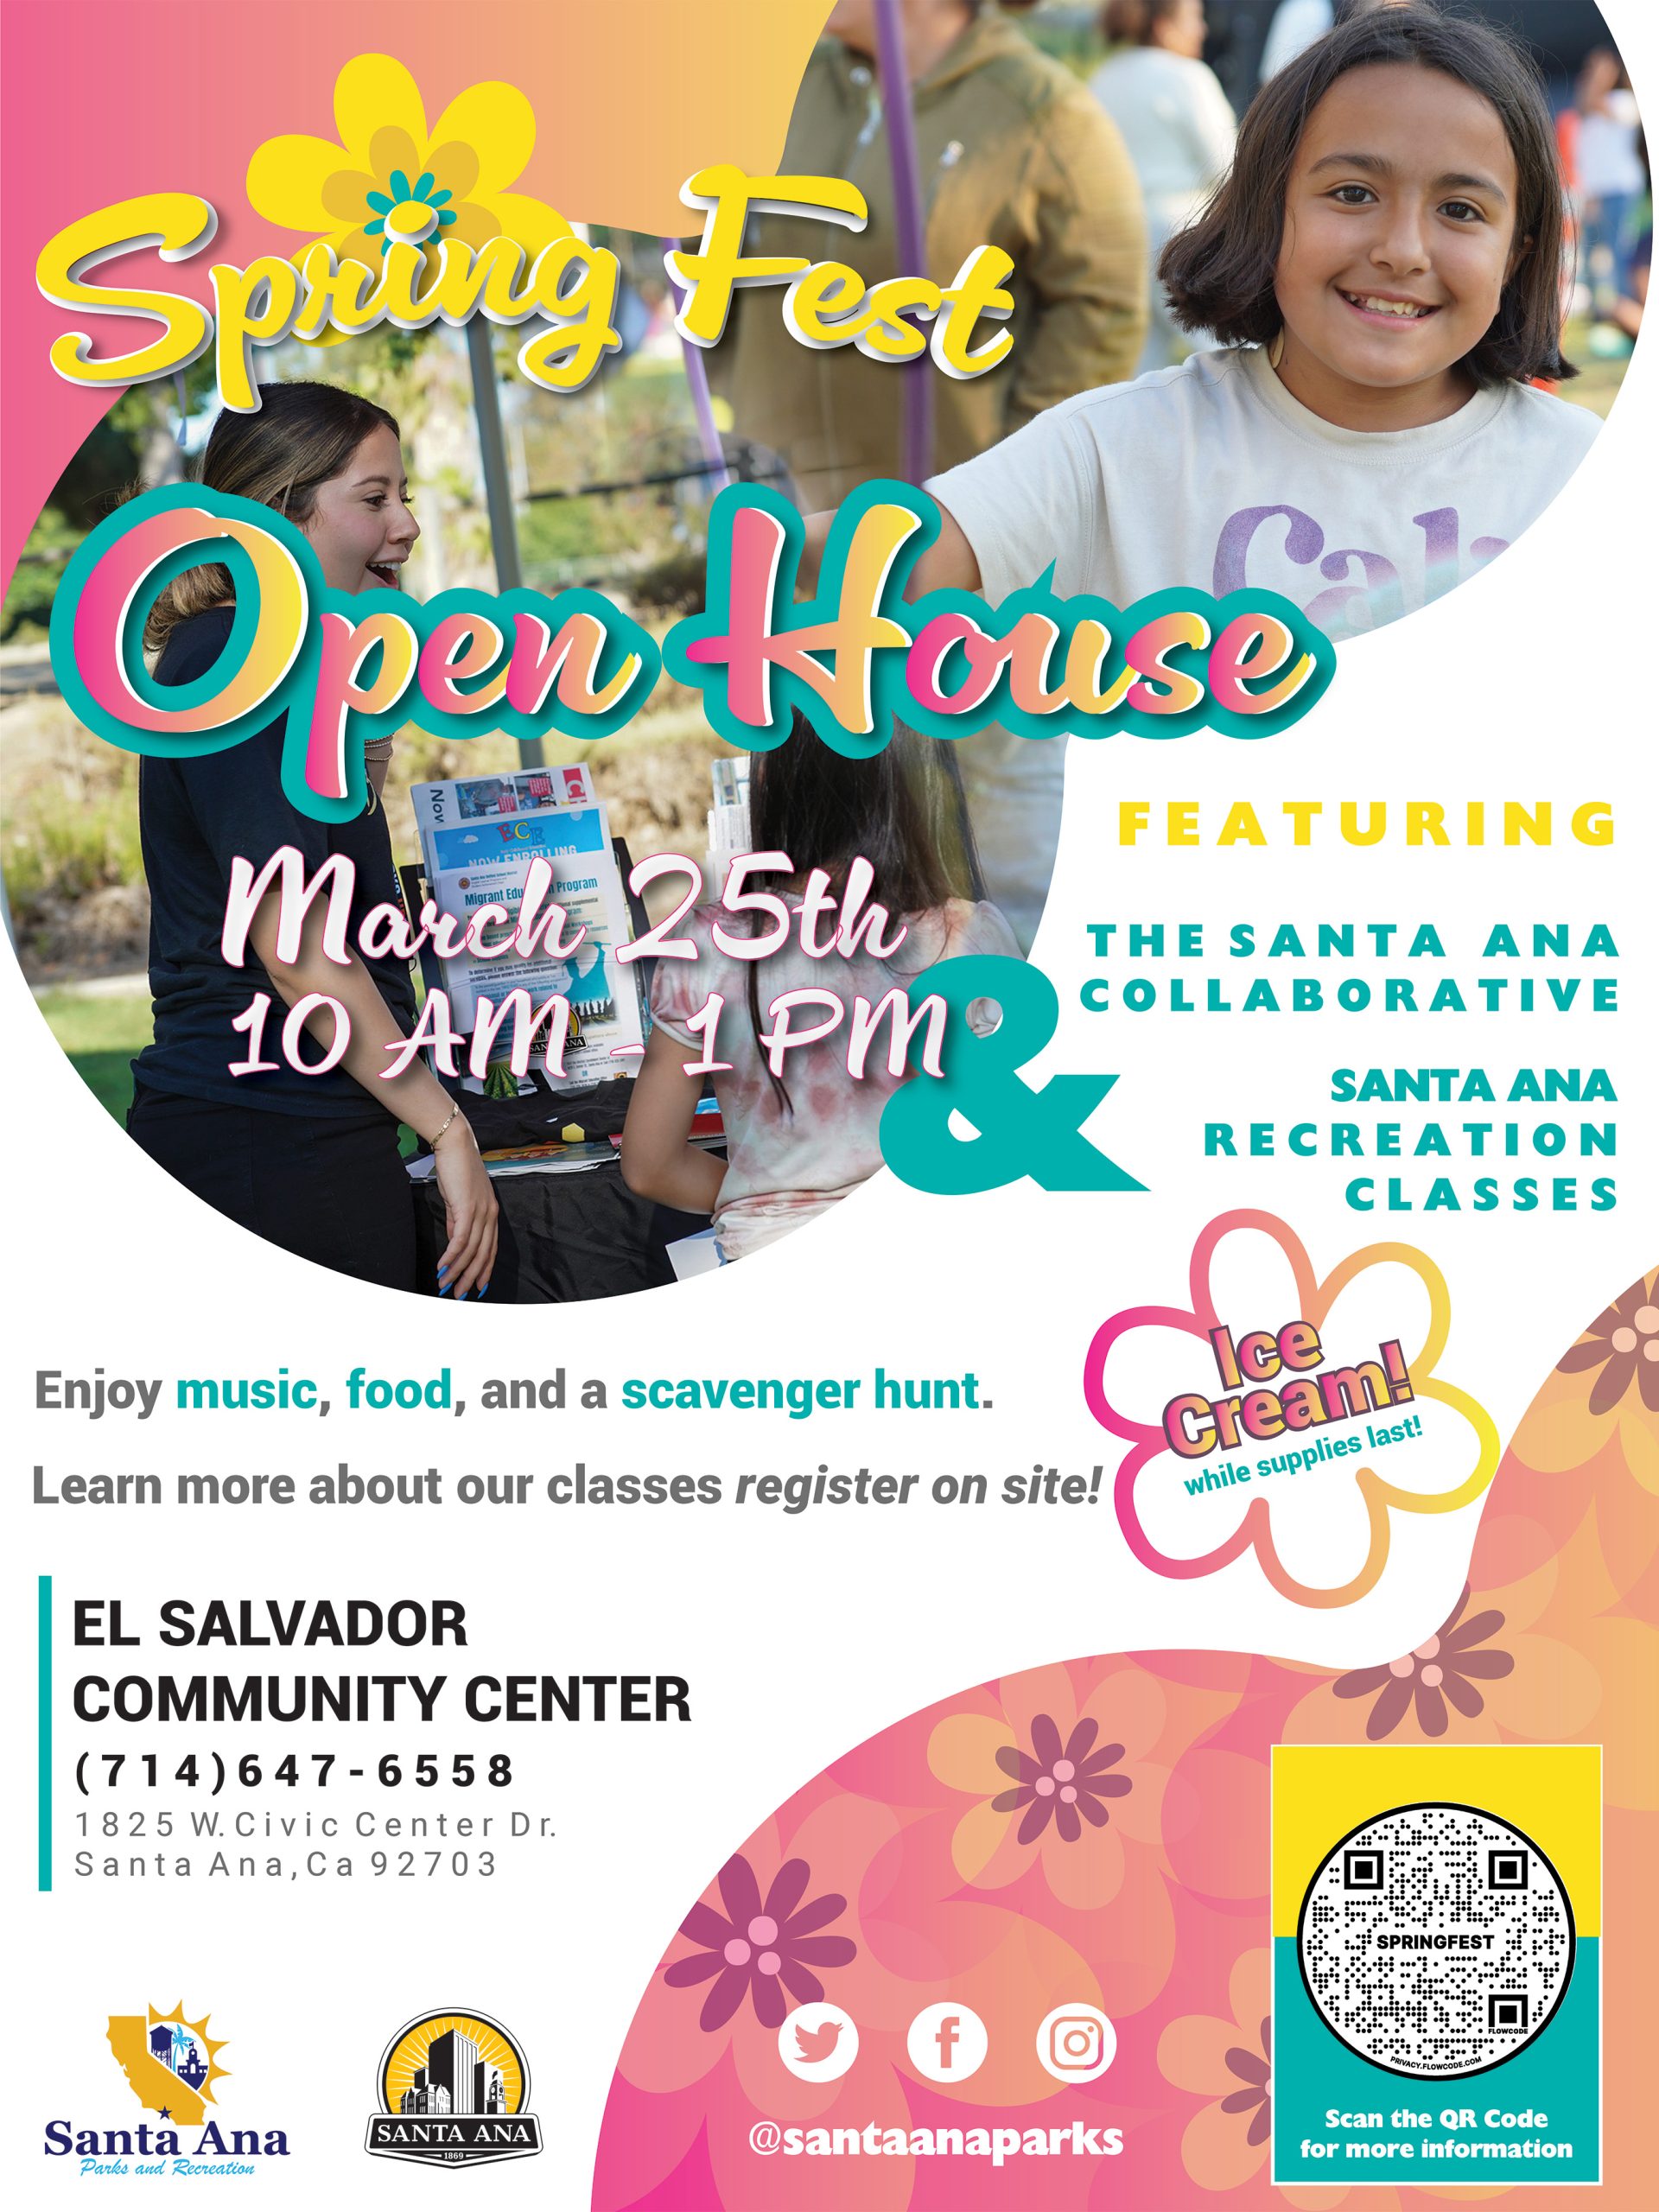 Springest open house flier at El Salvador Park on Mar. 25